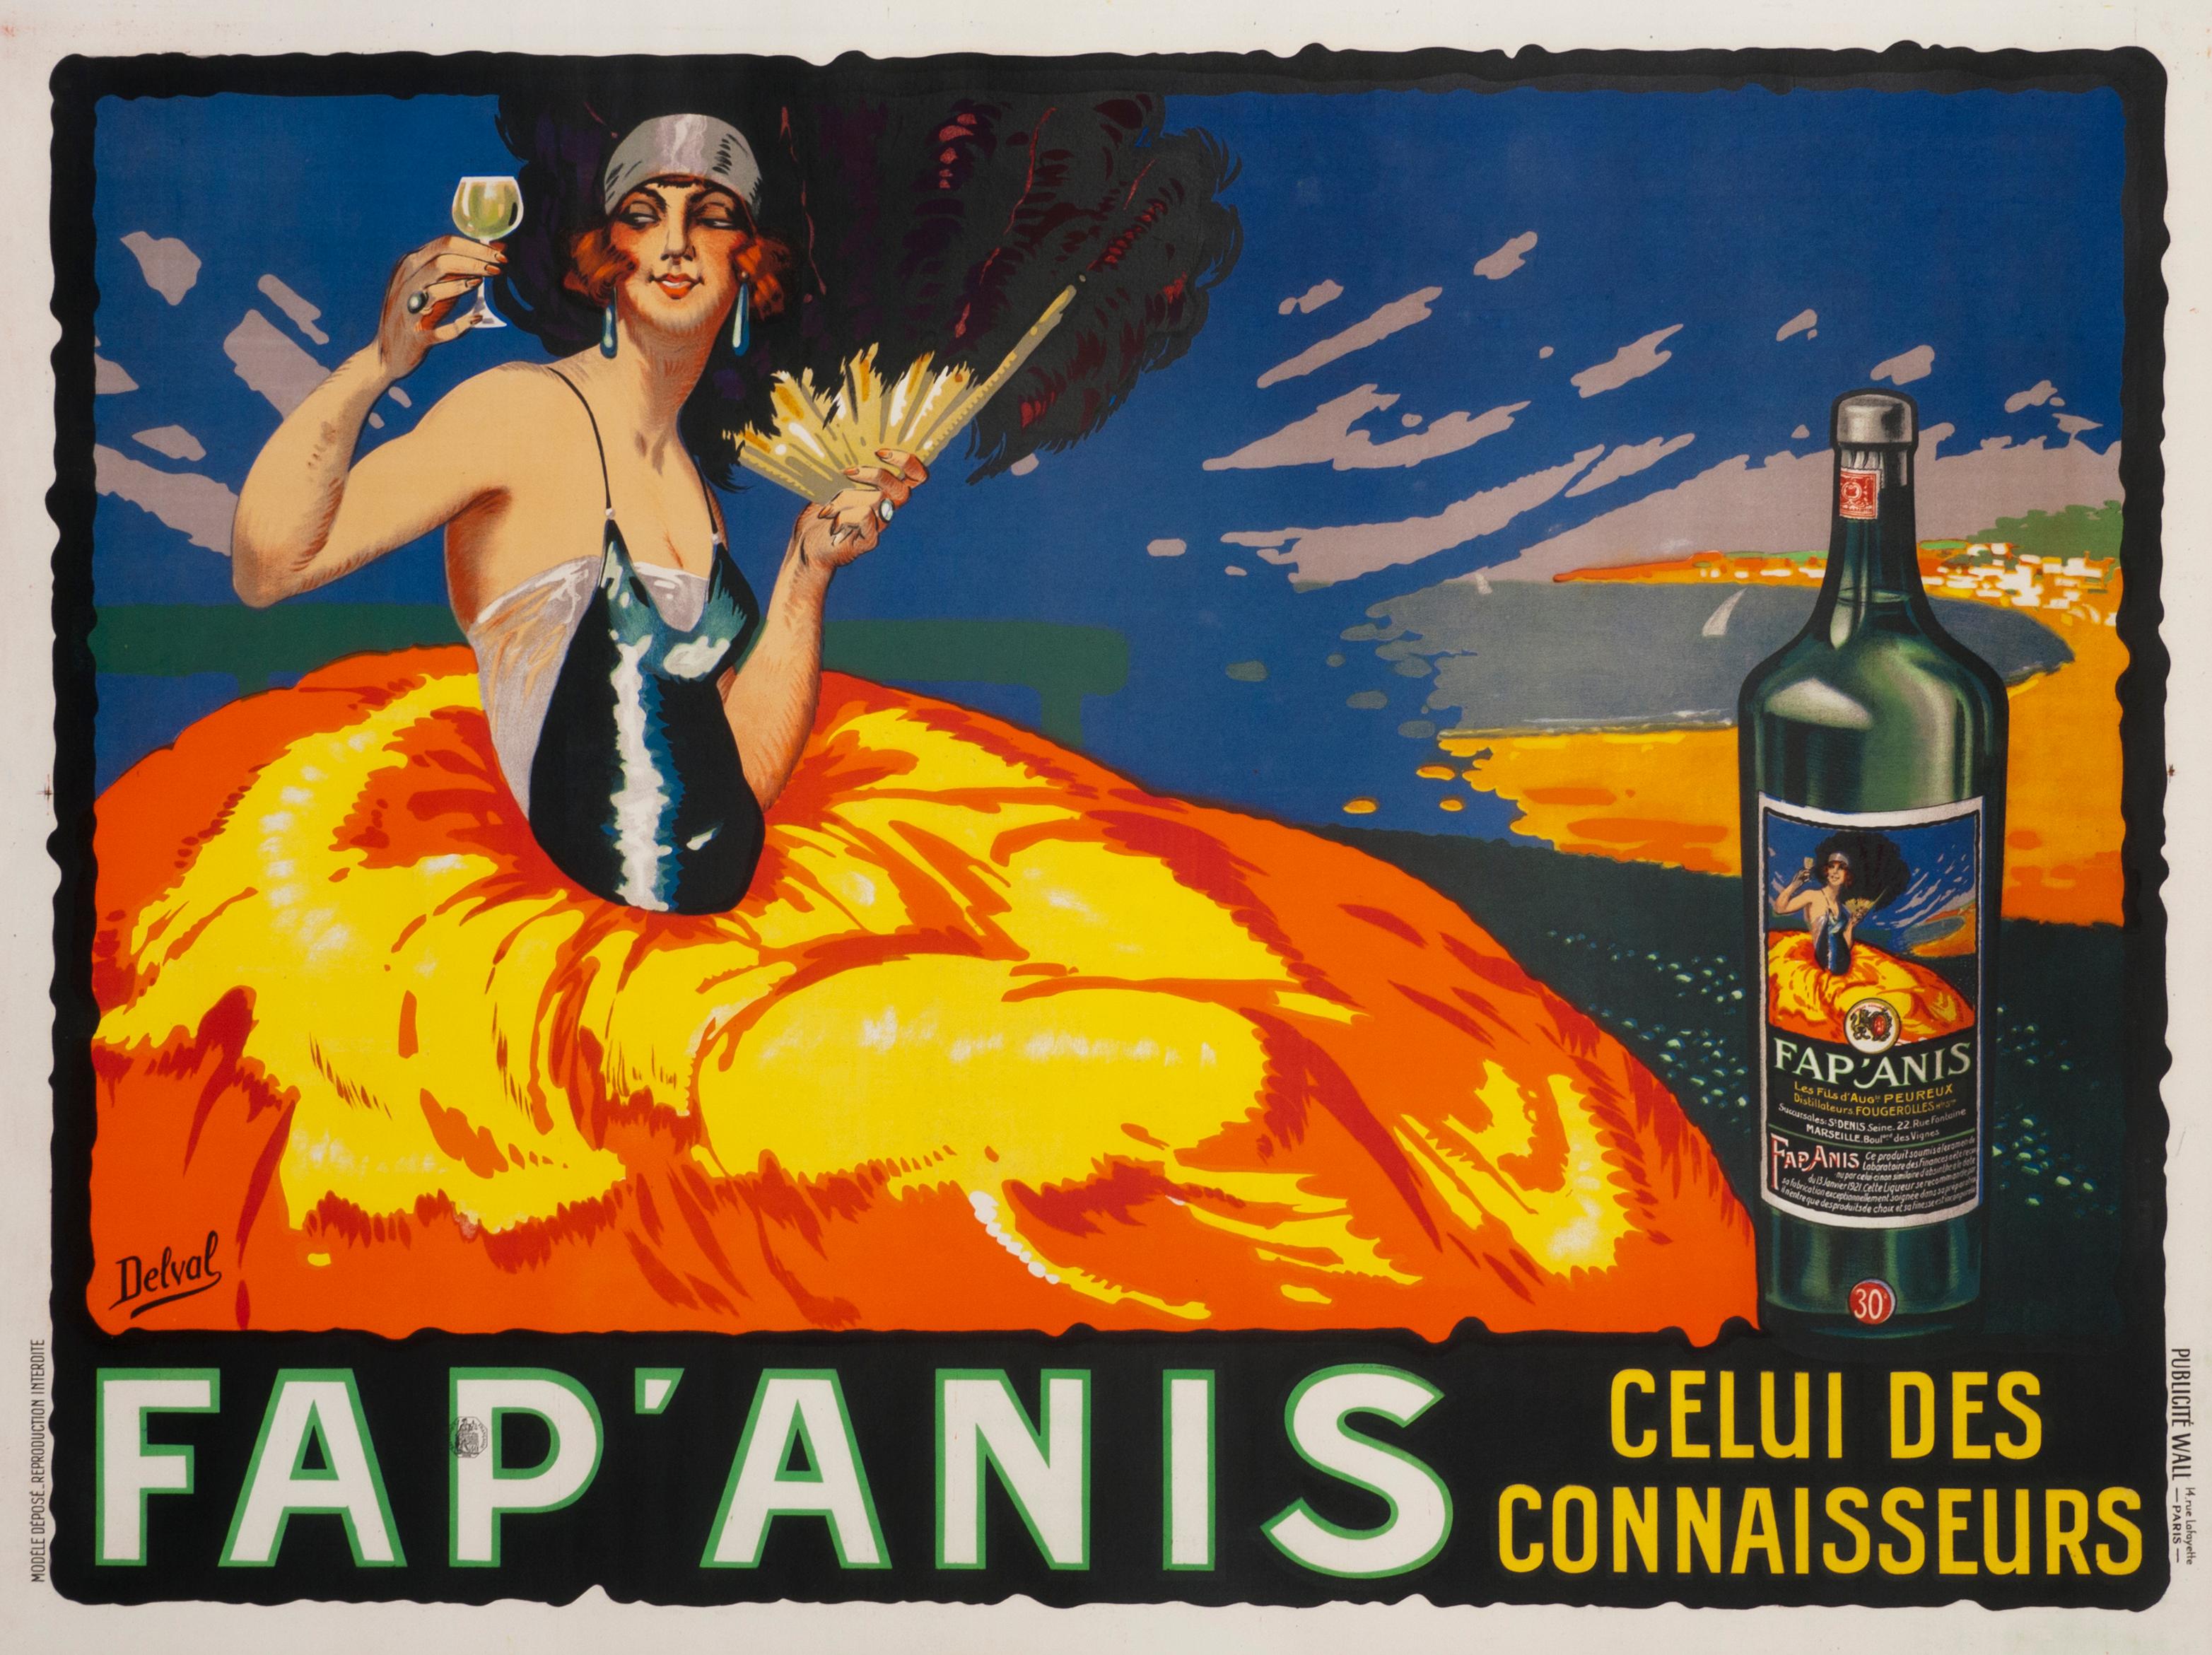 Delval Portrait Print - "Fap' Anis" French Aperitif Art Deco Flapper Original Vintage Poster